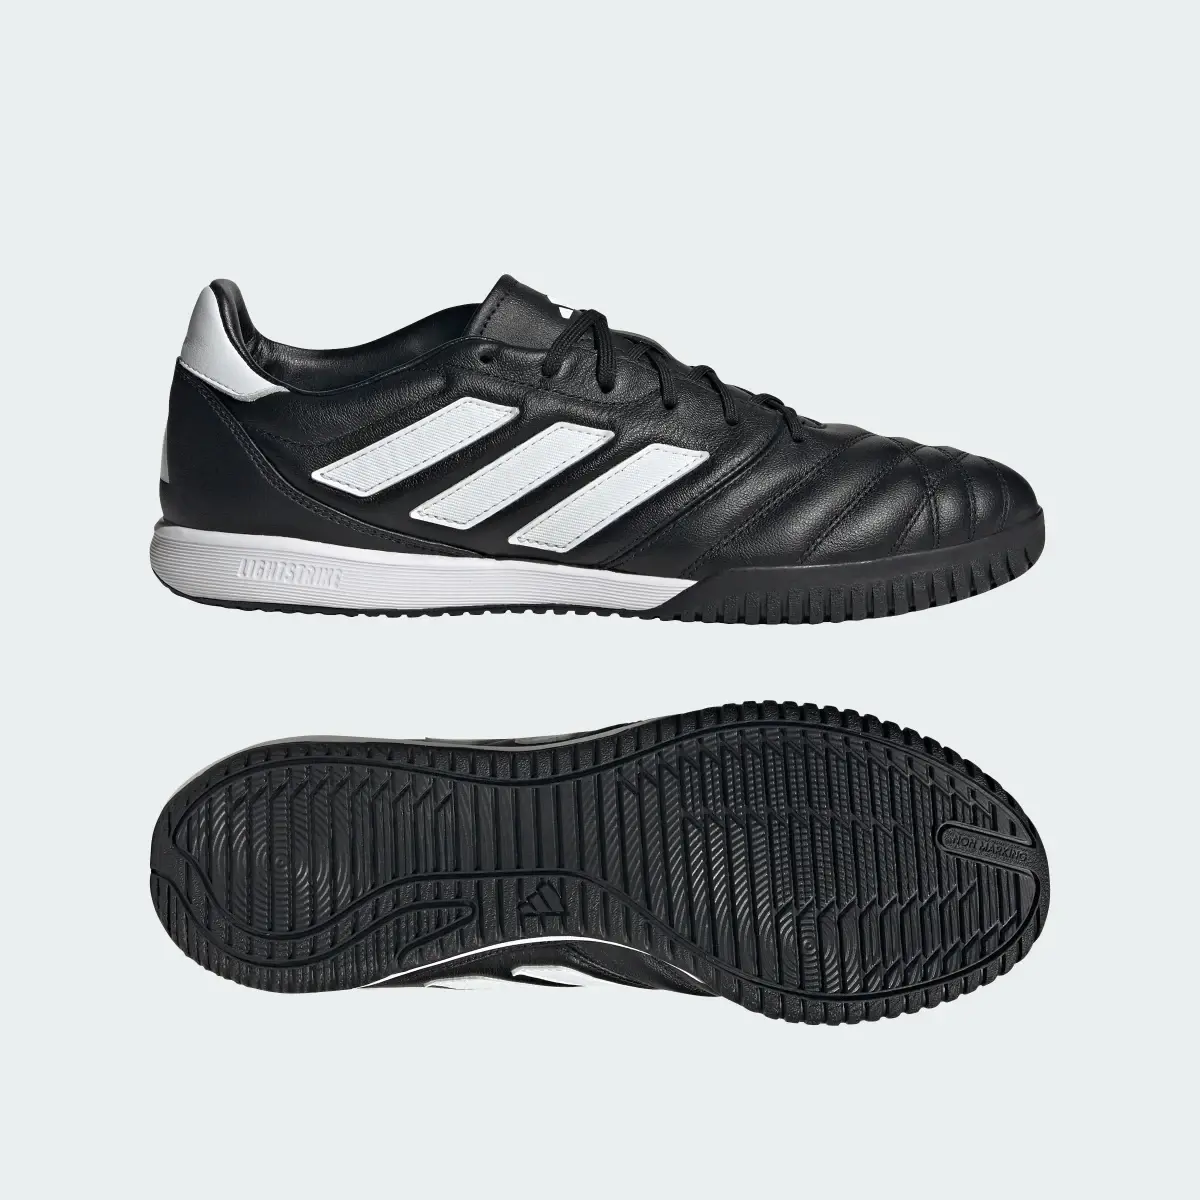 Adidas Copa Gloro Indoor Boots. 1